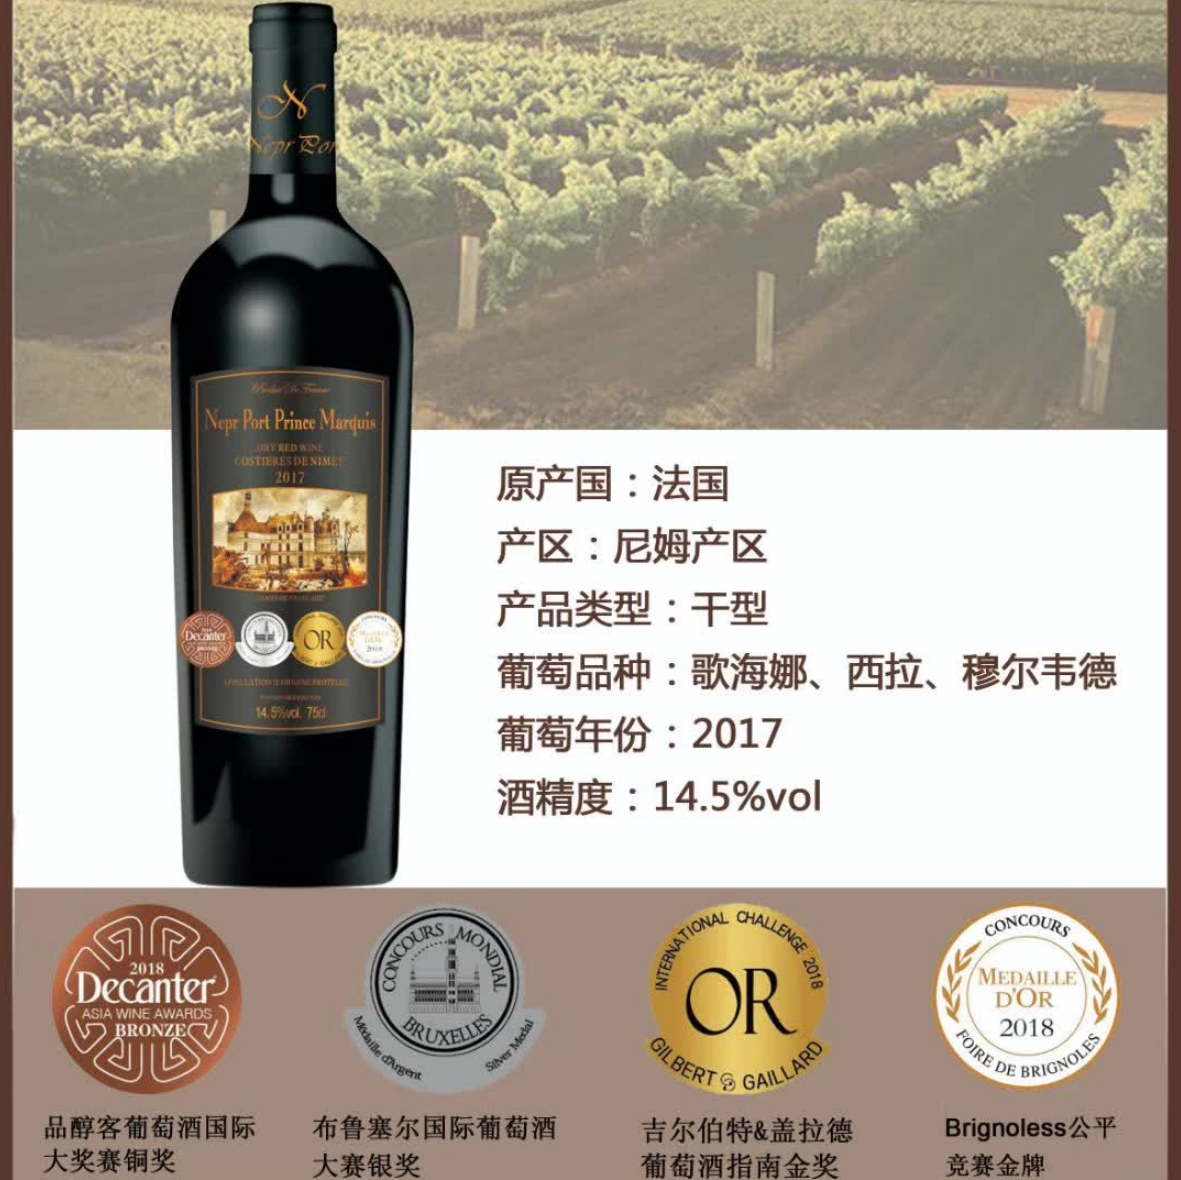 上海万耀诺波特王爵干红葡萄酒现货供应法国进口罗纳河谷地区混酿葡萄酒进口红酒葡萄酒代理加盟